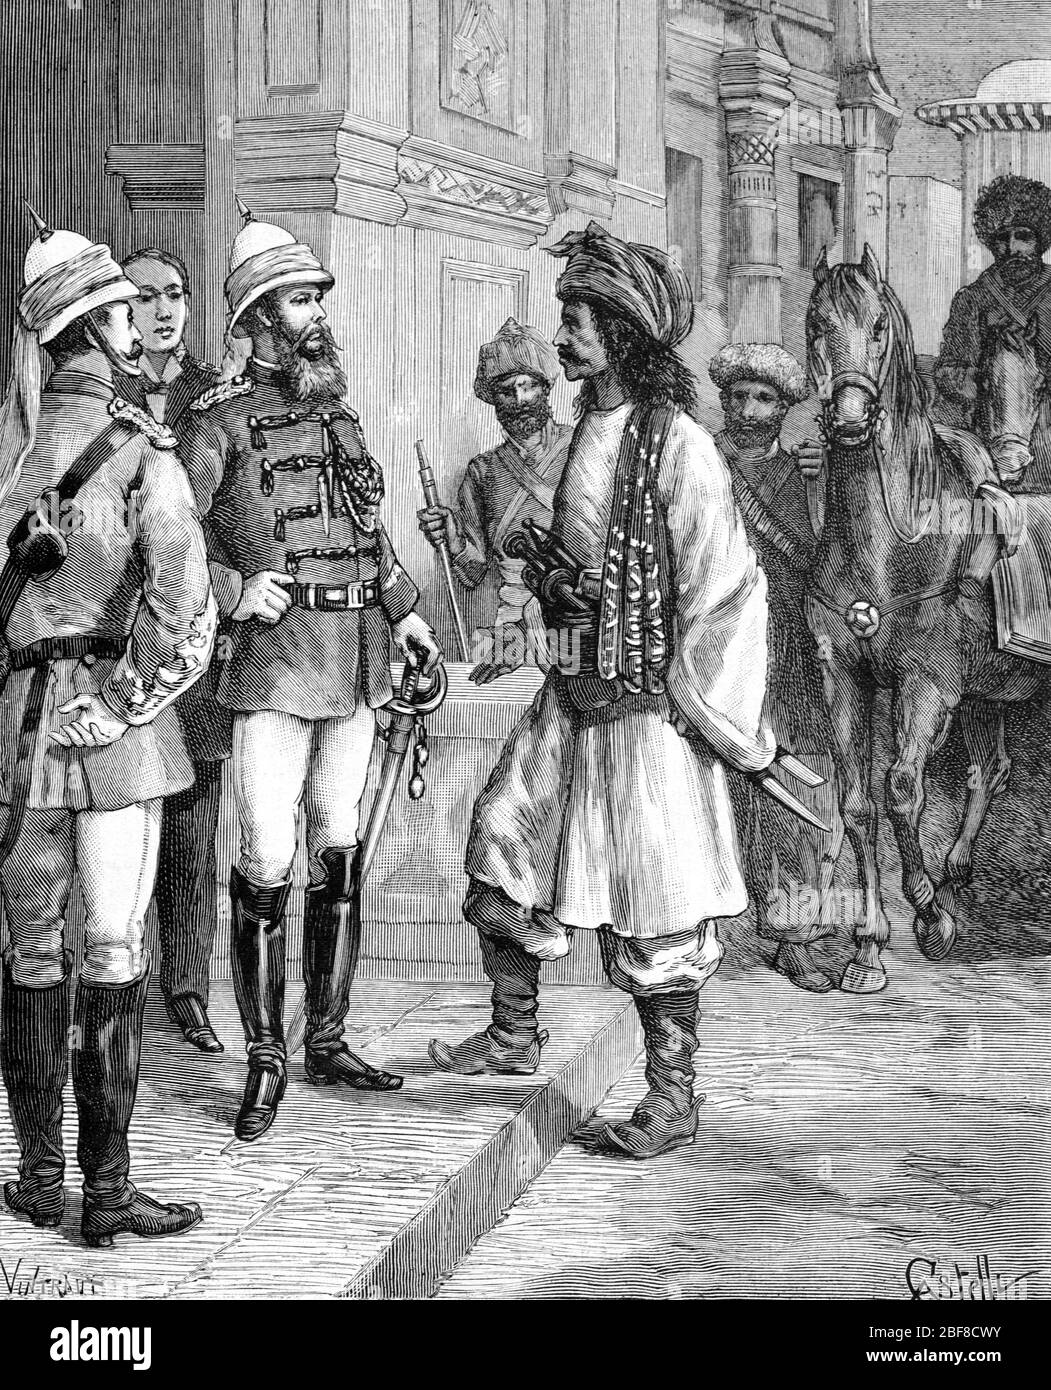 Ayub Khan (1857-1914) Emir of Afghanistan (1878-1880) se donne aux Britanniques en Afghanistan. Ayub Khan combattit les Britanniques pendant la seconde guerre anglo-afghane (1879-1880), fut le vainqueur de la bataille de Maiwand, mais vaincu à la bataille de Khandahar (sept 1880) Vintage ou ancienne Illustration ou Engrave 1889 Banque D'Images